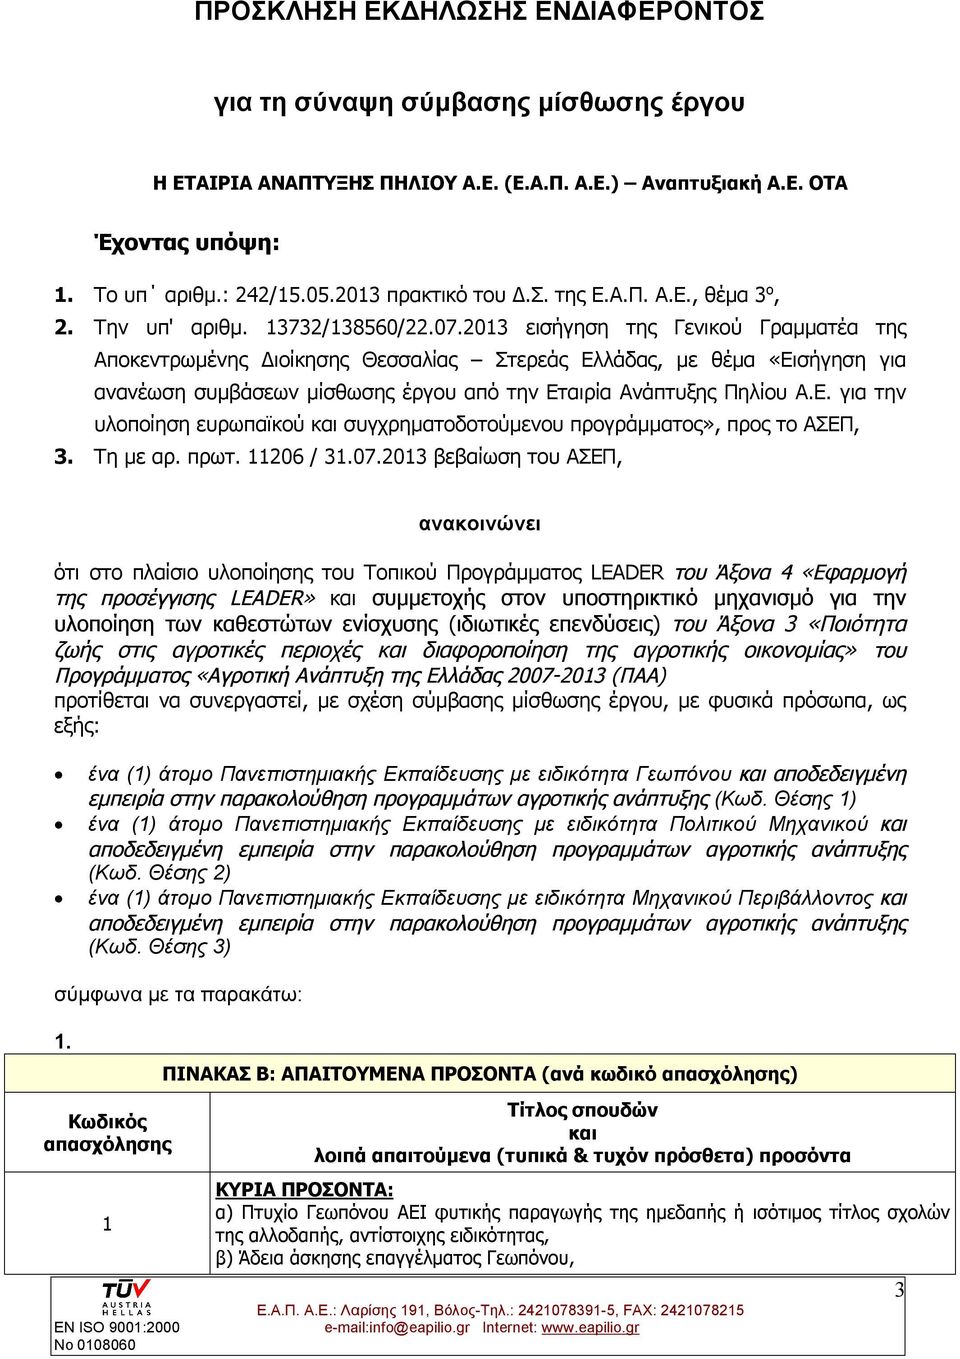 2013 εισήγηση της Γενικού Γραμματέα της Αποκεντρωμένης Διοίκησης Θεσσαλίας Στερεάς Ελλάδας, με θέμα «Εισήγηση για ανανέωση συμβάσεων μίσθωσης έργου από την Εταιρία Ανάπτυξης Πηλίου Α.Ε. για την υλοποίηση ευρωπαϊκού και συγχρηματοδοτούμενου προγράμματος», προς το ΑΣΕΠ, 3.